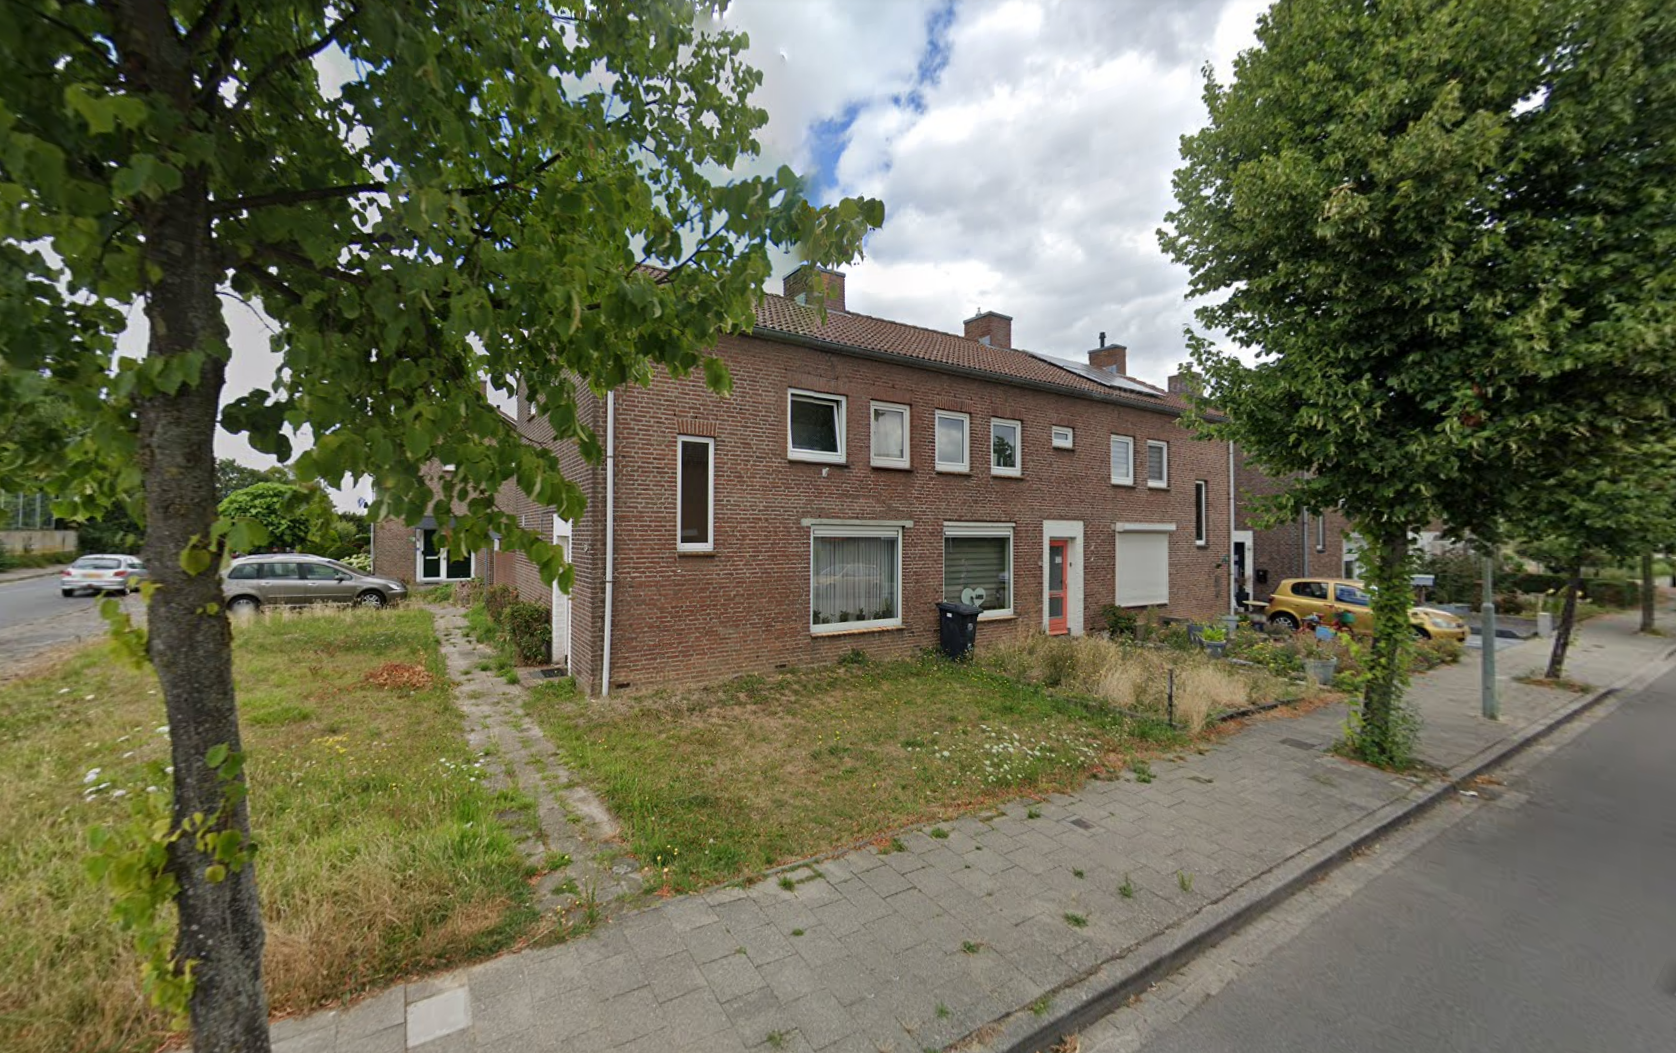 Prinsenstraat 26, 6433 GJ Hoensbroek, Nederland